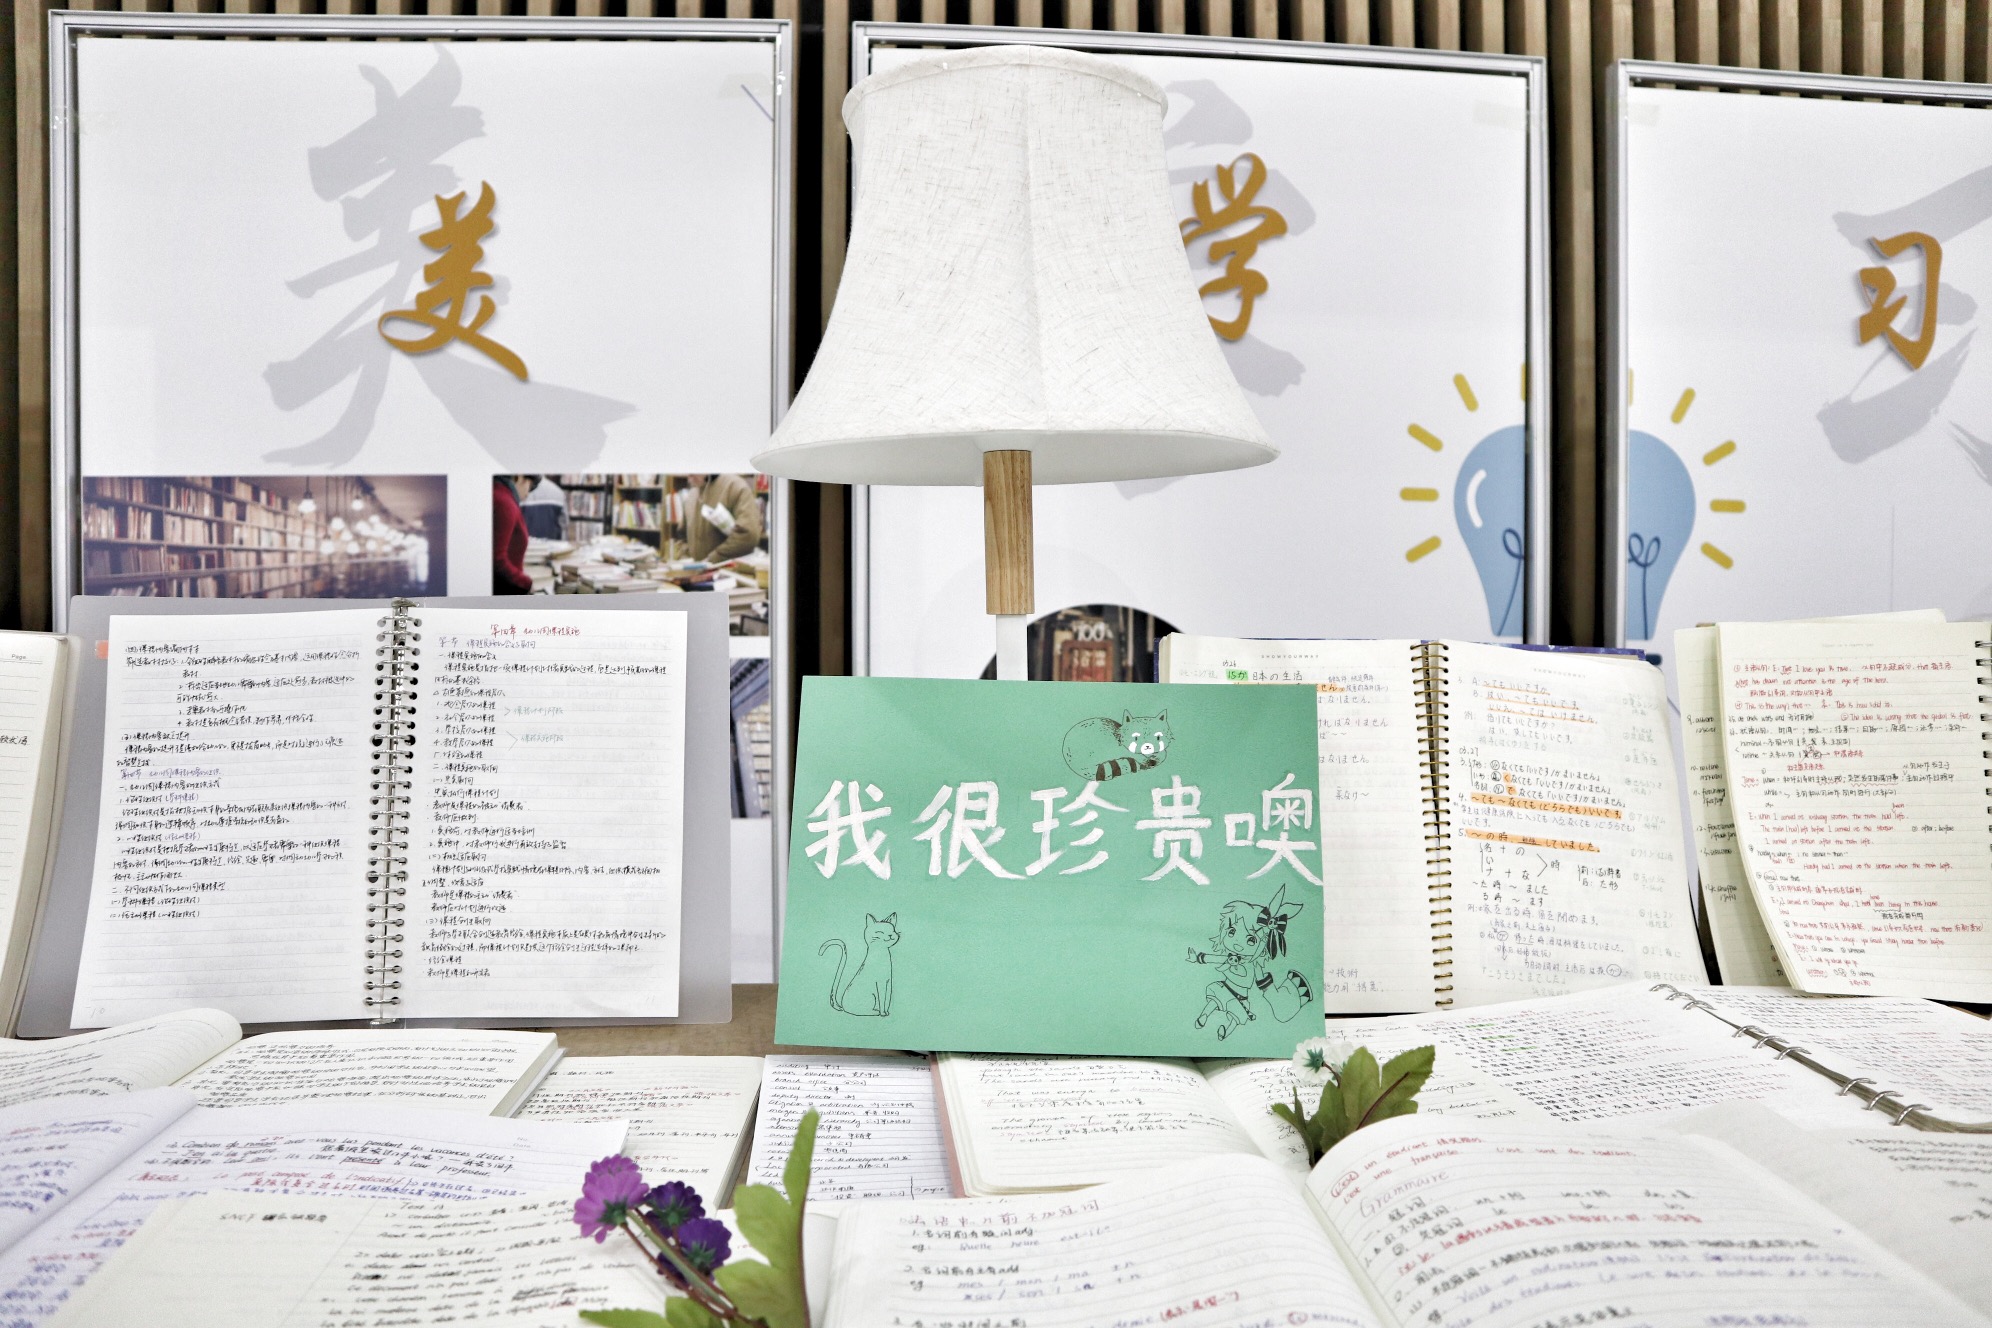 吉林华桥外国语学院：展最美学习笔记，让课堂回归常识